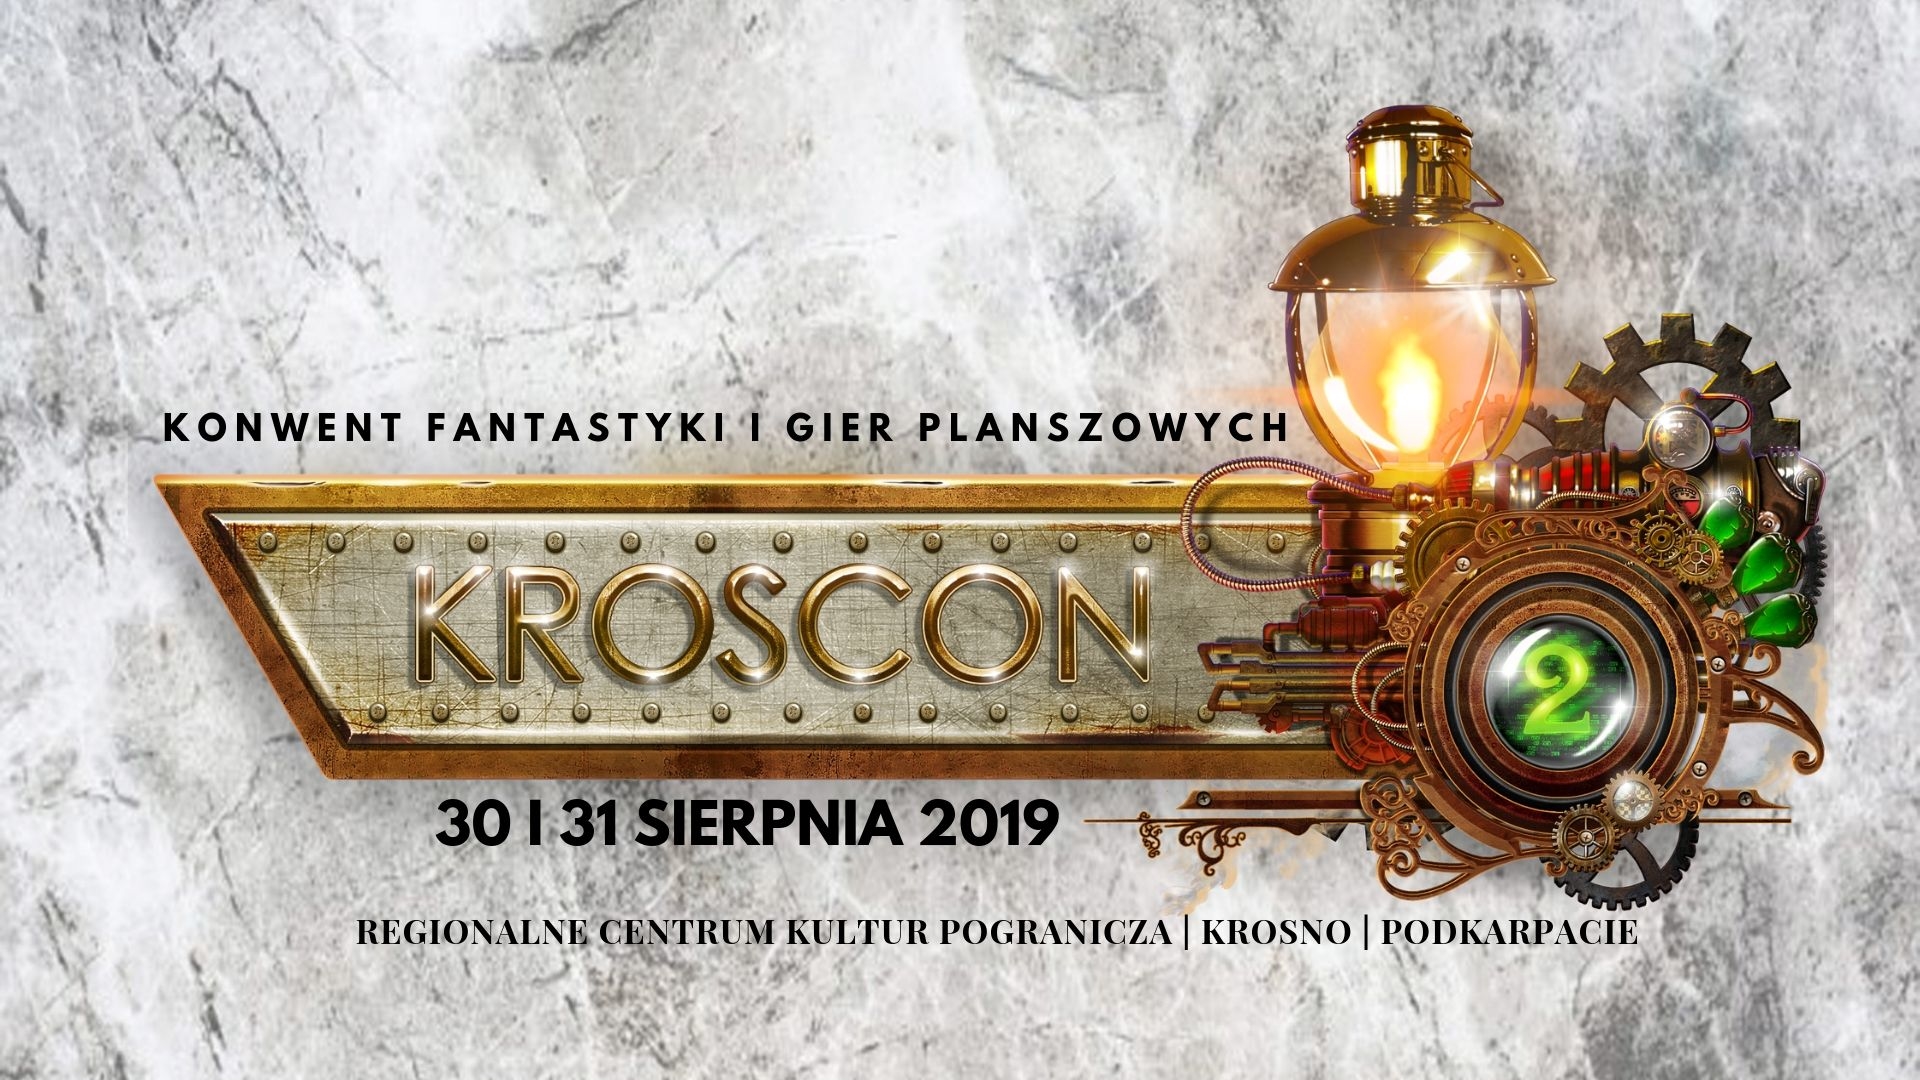 Konwent fantastyki i gier planszowych KrosCon - Zdjęcie główne